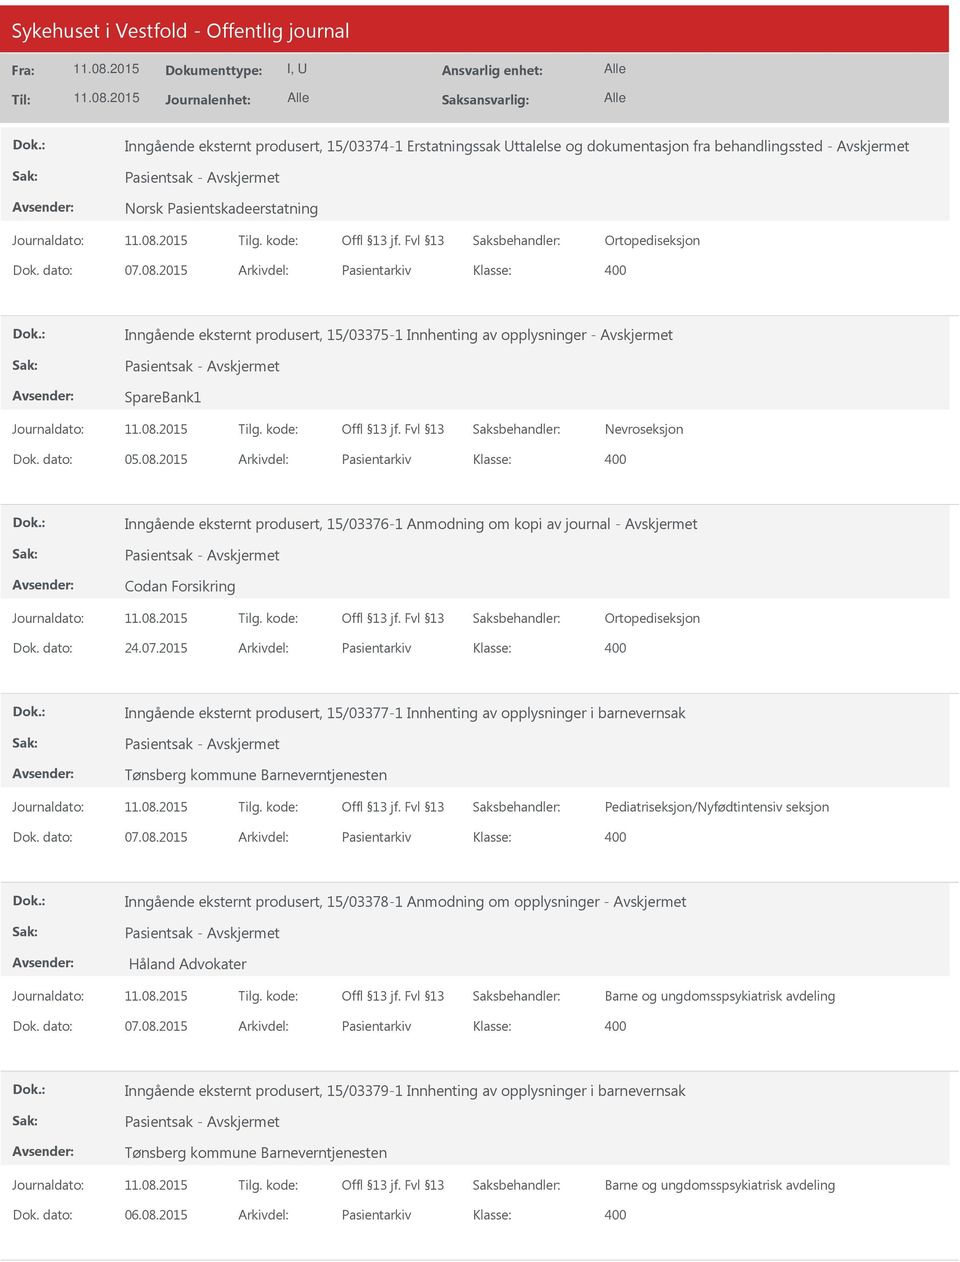 2015 Arkivdel: Pasientarkiv Inngående eksternt produsert, 15/03376-1 Anmodning om kopi av journal - Pasientsak - Codan Forsikring Ortopediseksjon Dok. dato: 24.07.